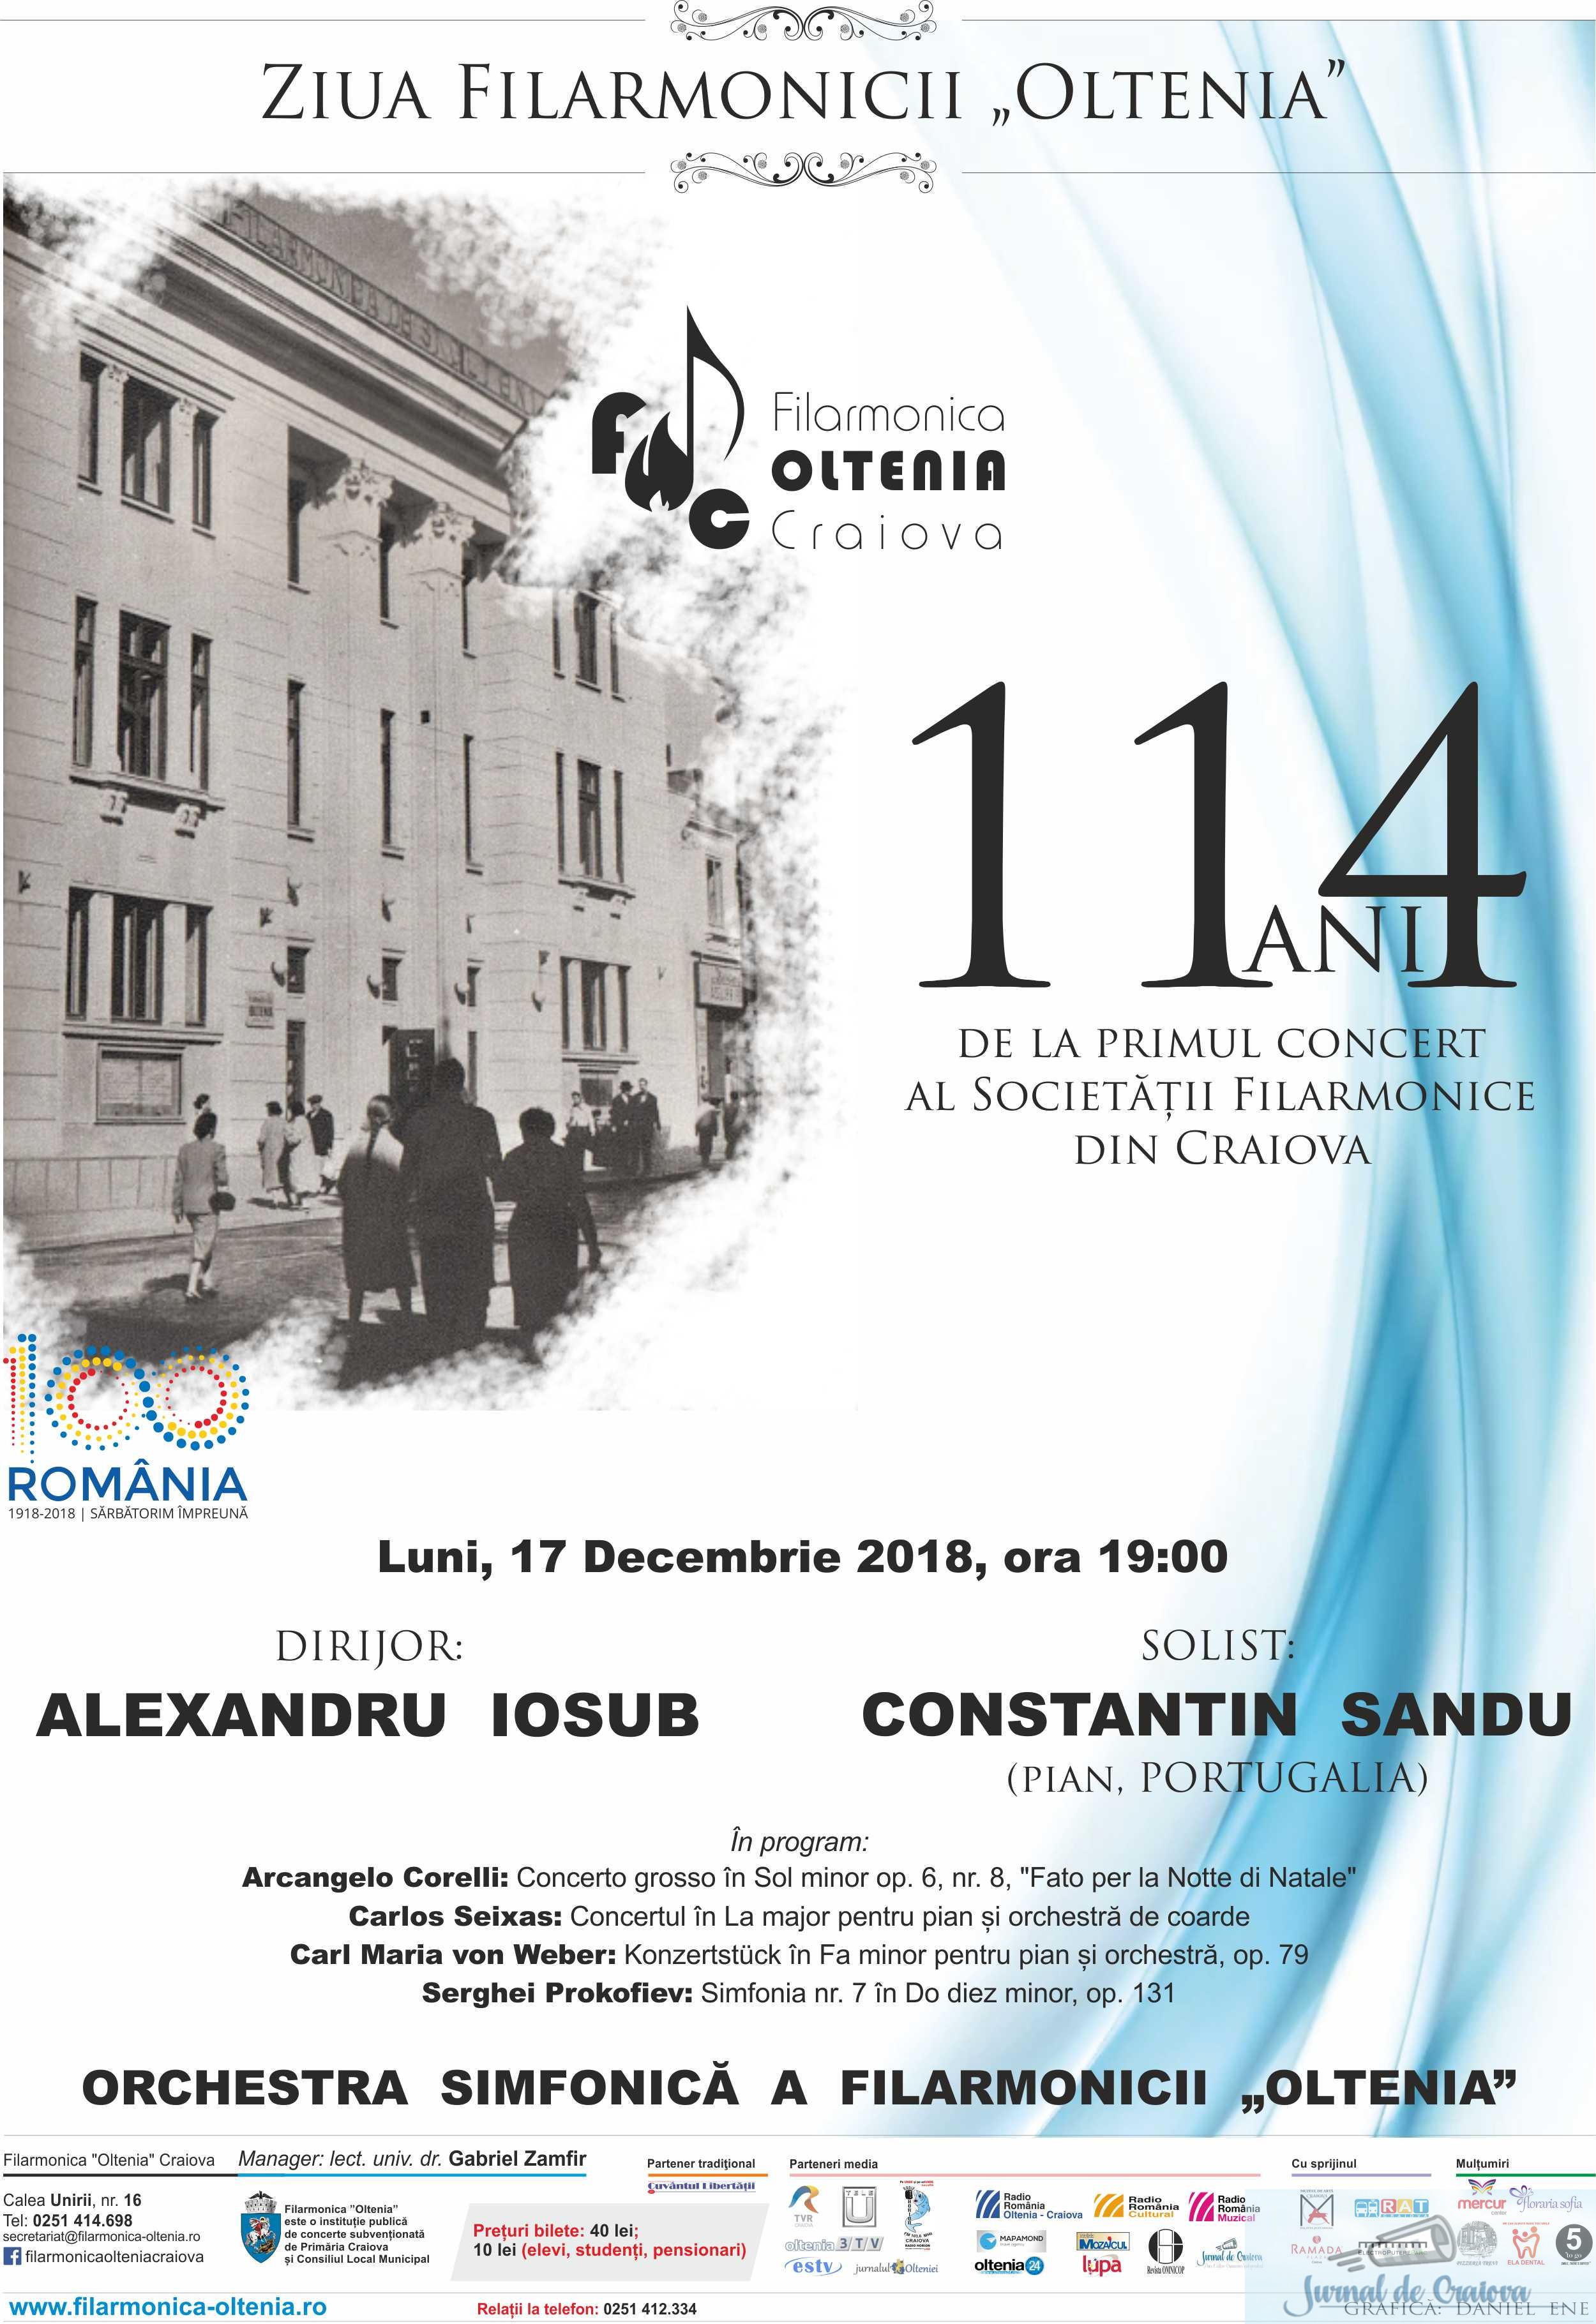 Ziua Filarmonicii Oltenia - 114 ani de la primul concert al Societatii Filarmonice din Craiova 1